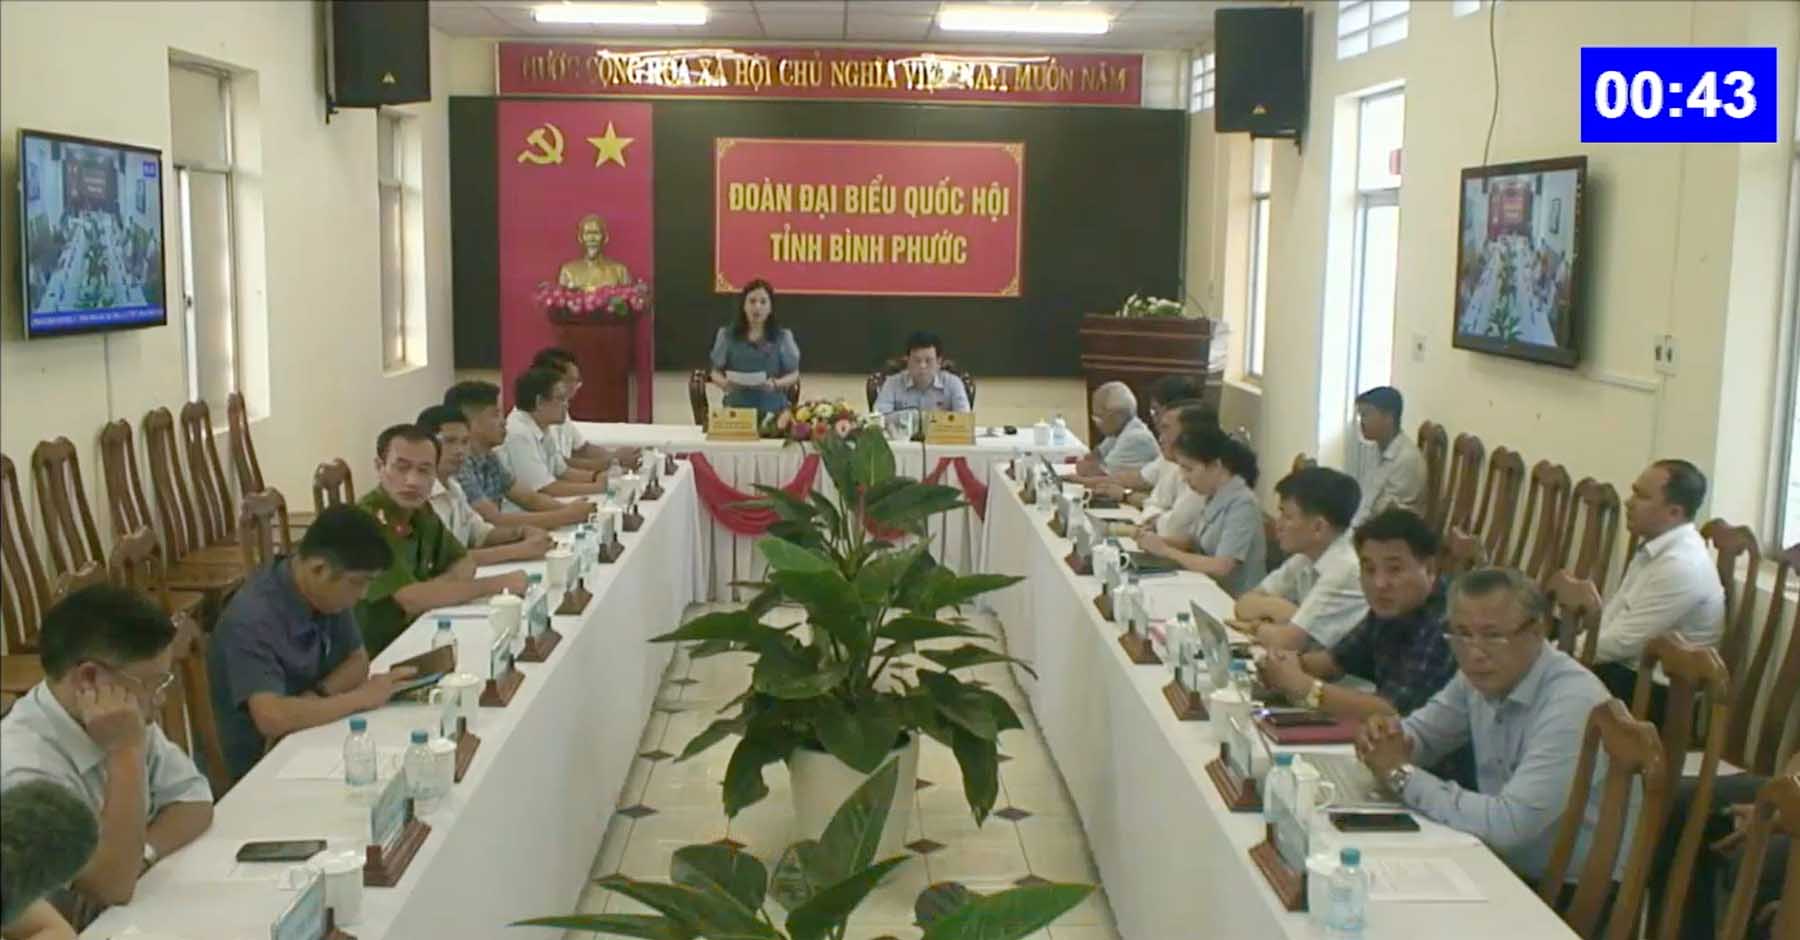 Đại biểu Điểu Huỳnh Sang - Đoàn ĐBQH tỉnh Bình Phước. Ảnh: Phạm Thắng